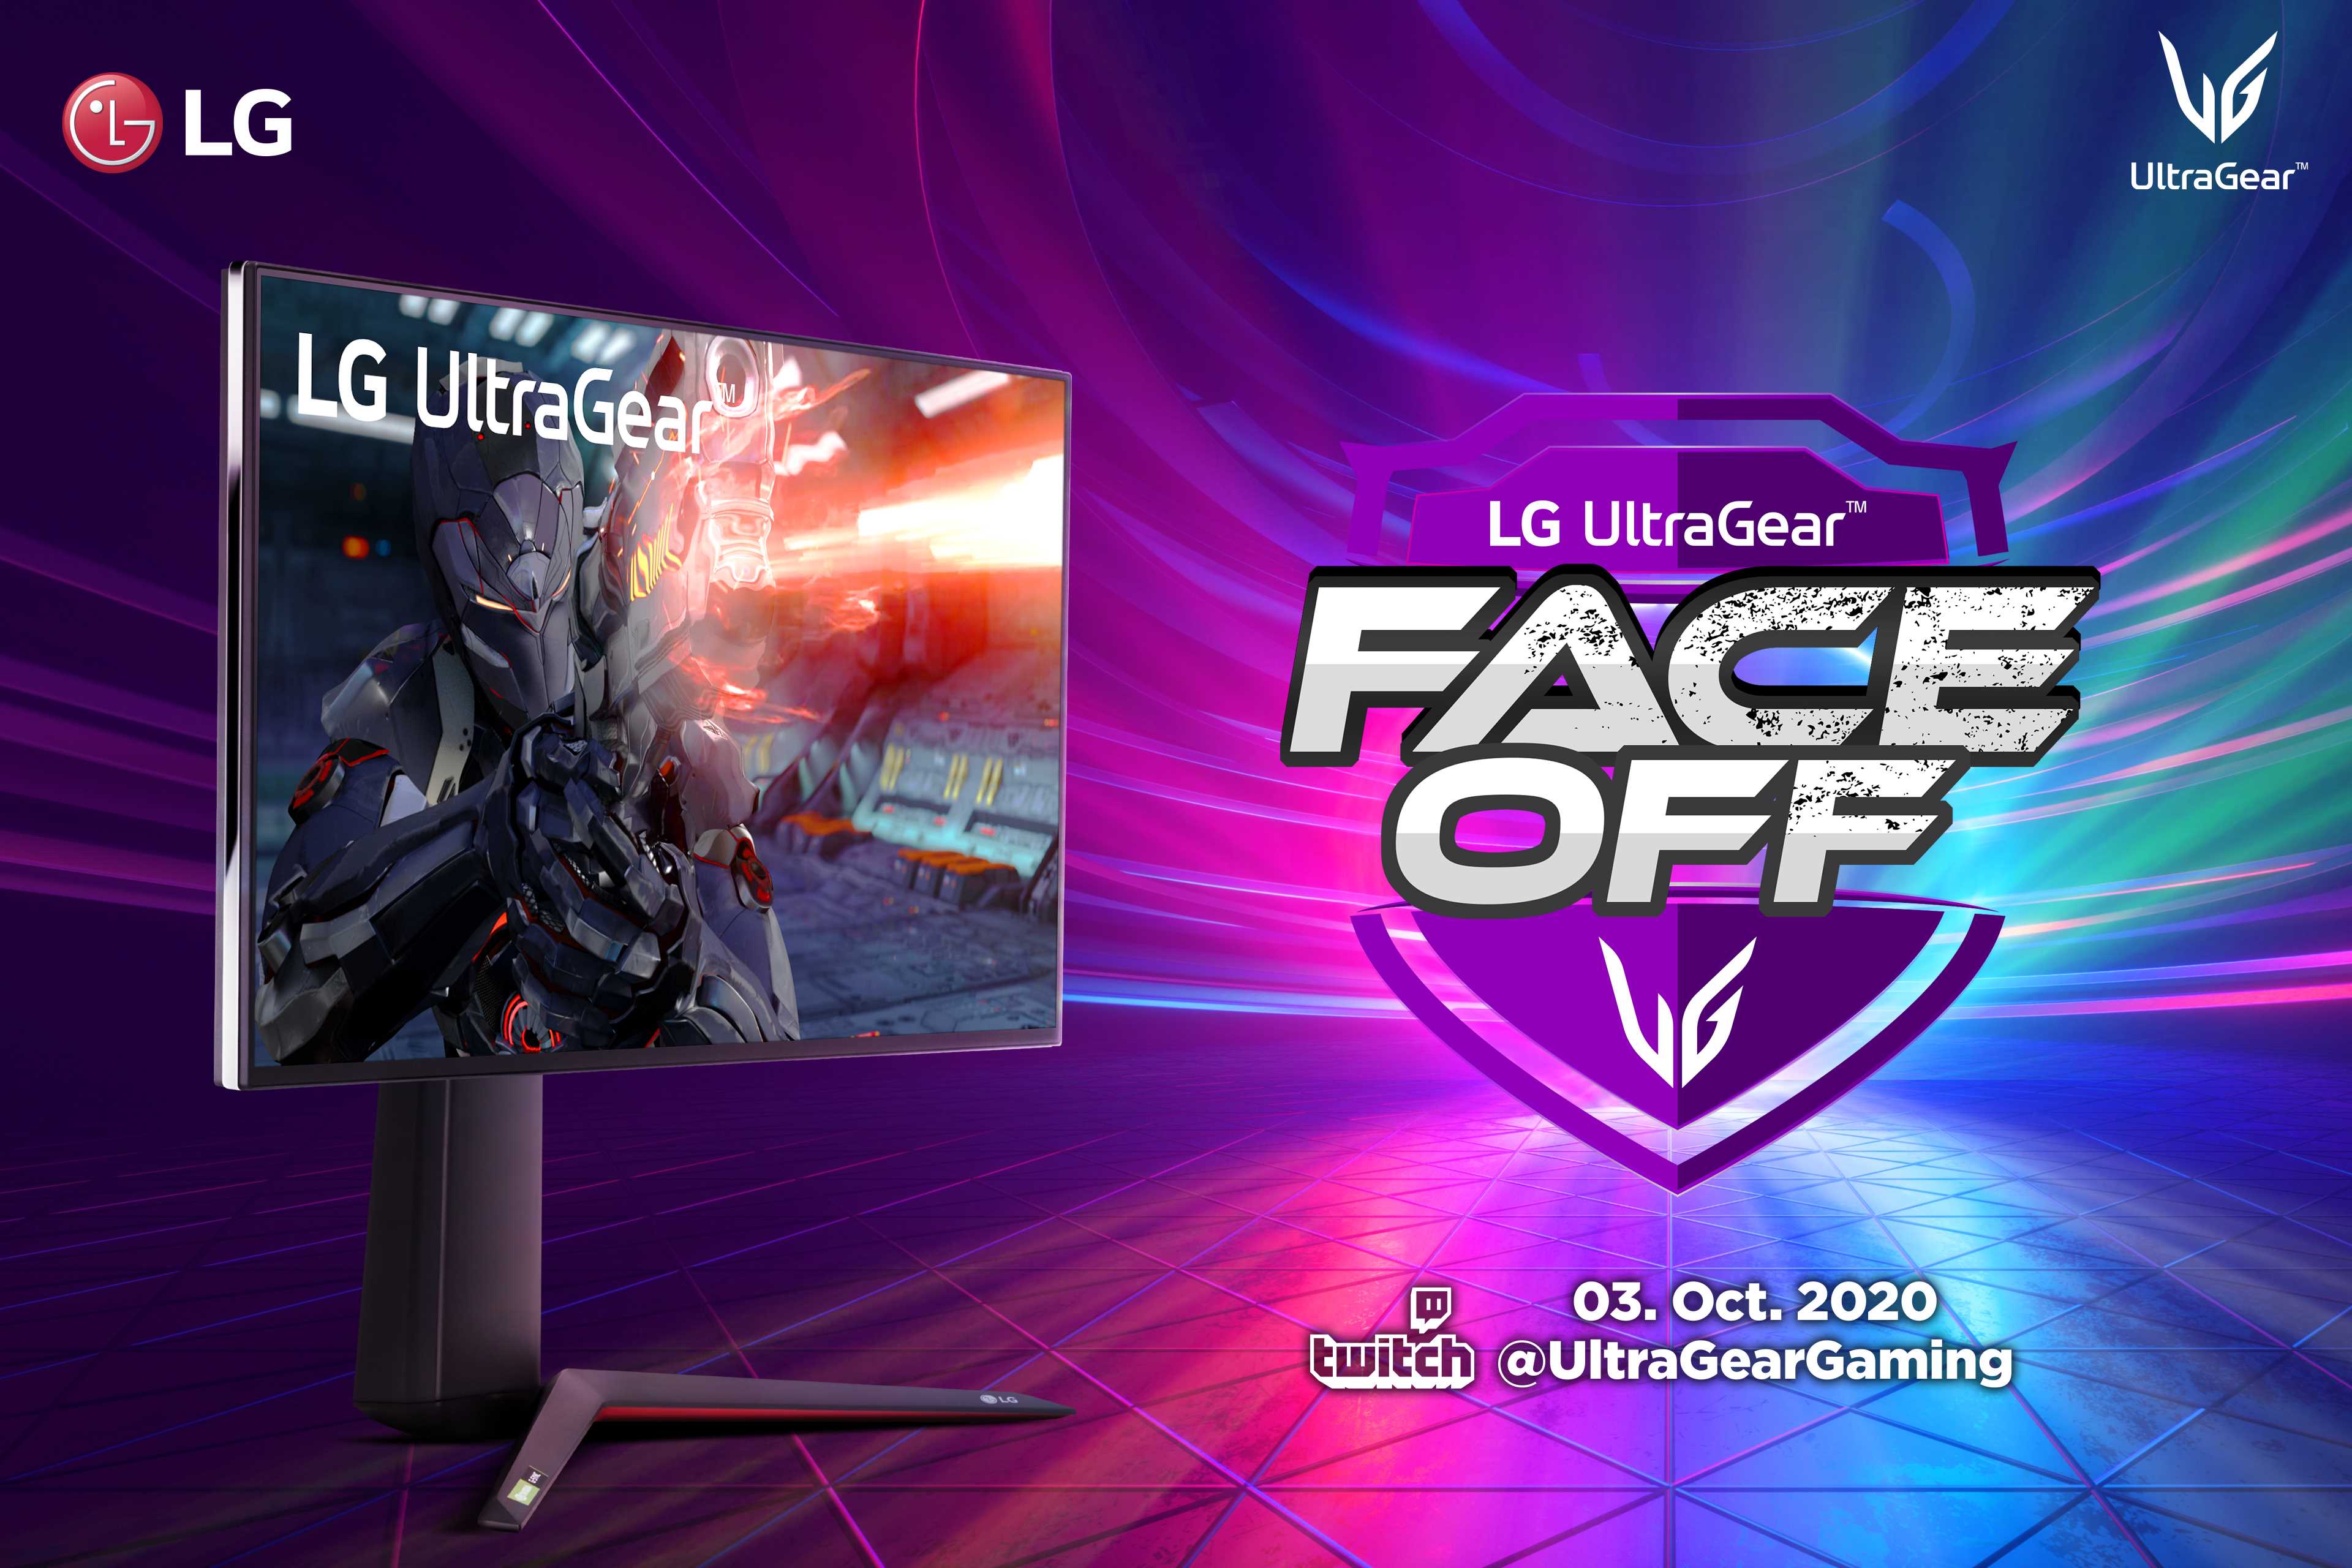 LG ULTRAGEAR™ FACE-OFF TOURNAMENT_02.jpg